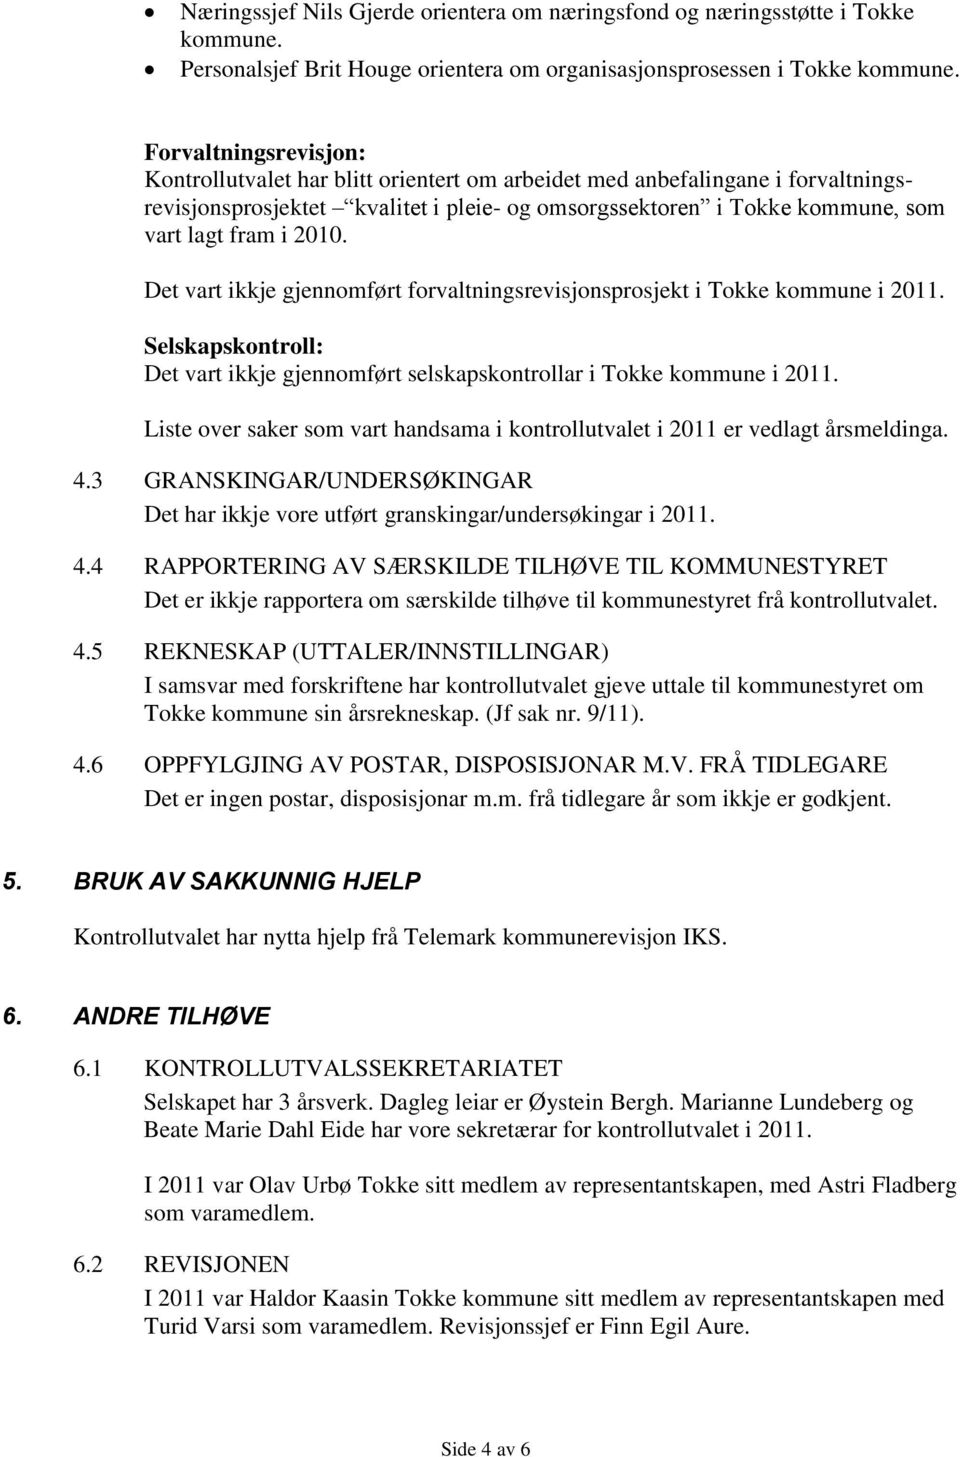 2010. Det vart ikkje gjennomført forvaltningsrevisjonsprosjekt i Tokke kommune i 2011. Selskapskontroll: Det vart ikkje gjennomført selskapskontrollar i Tokke kommune i 2011.